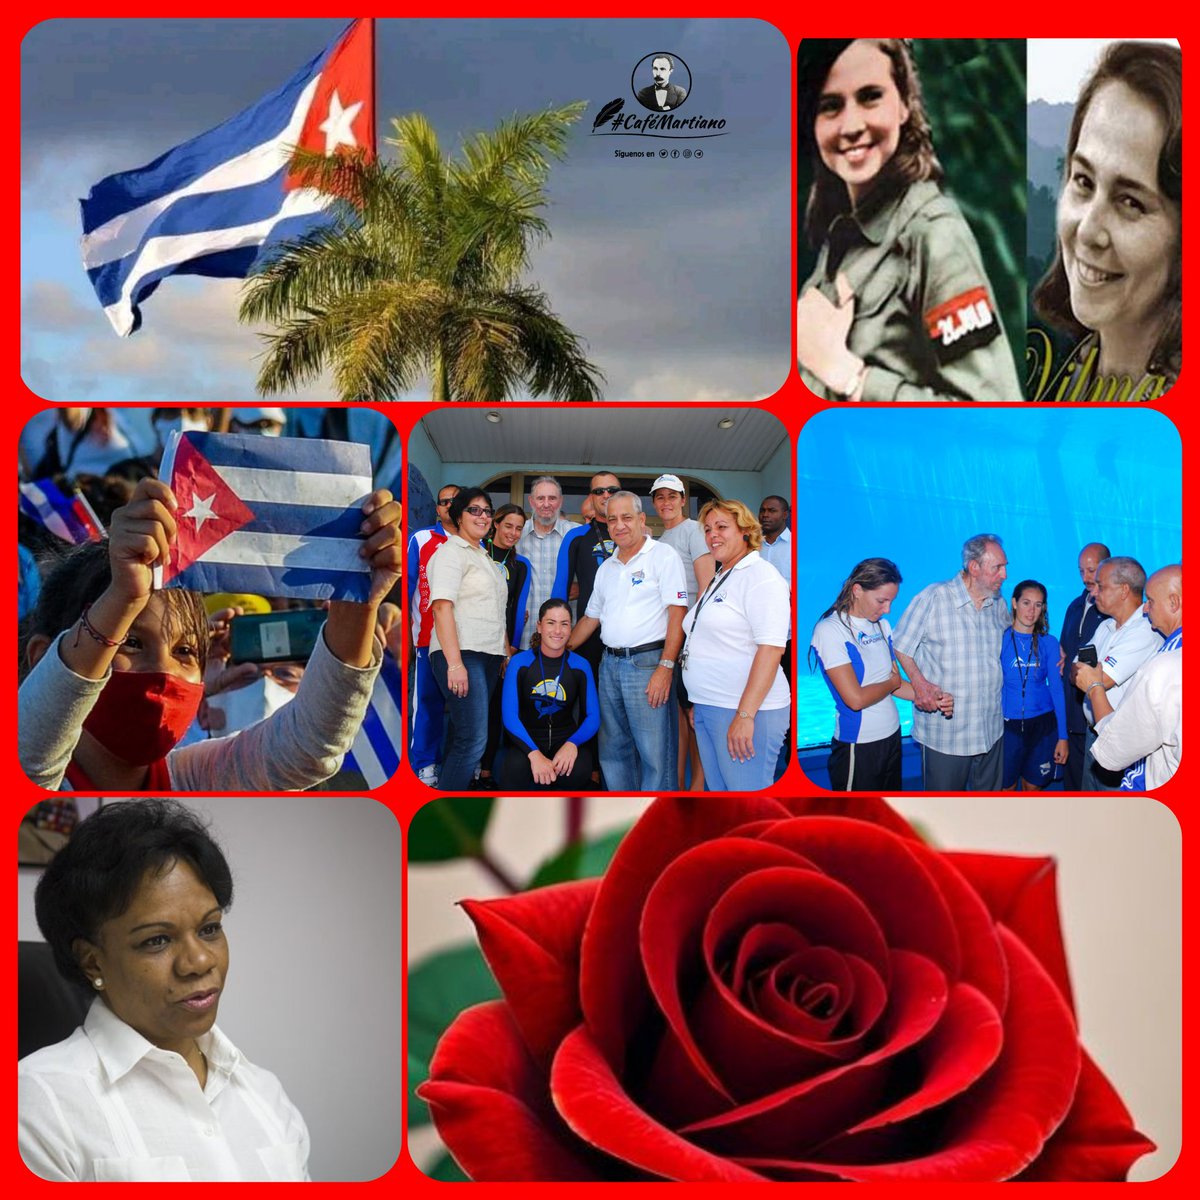 @cafemartiano @DiazCanelB @DrRobertoMOjeda @InesMChapman @TeresaBoue @EVilluendasC @IzquierdaUnid15 @agnes_becerra @mimovilespatria @DeZurdaTeam_ @ValoresTeam1 Buenas tardes #CaféMartiano🇨🇺 La Revolución tiene en las mujeres cubanas un verdadero ejército, y por eso decimos bien fuerte que la Revolución es sencillamente invencible hoy y siempre. #CubaEsAmor🇨🇺